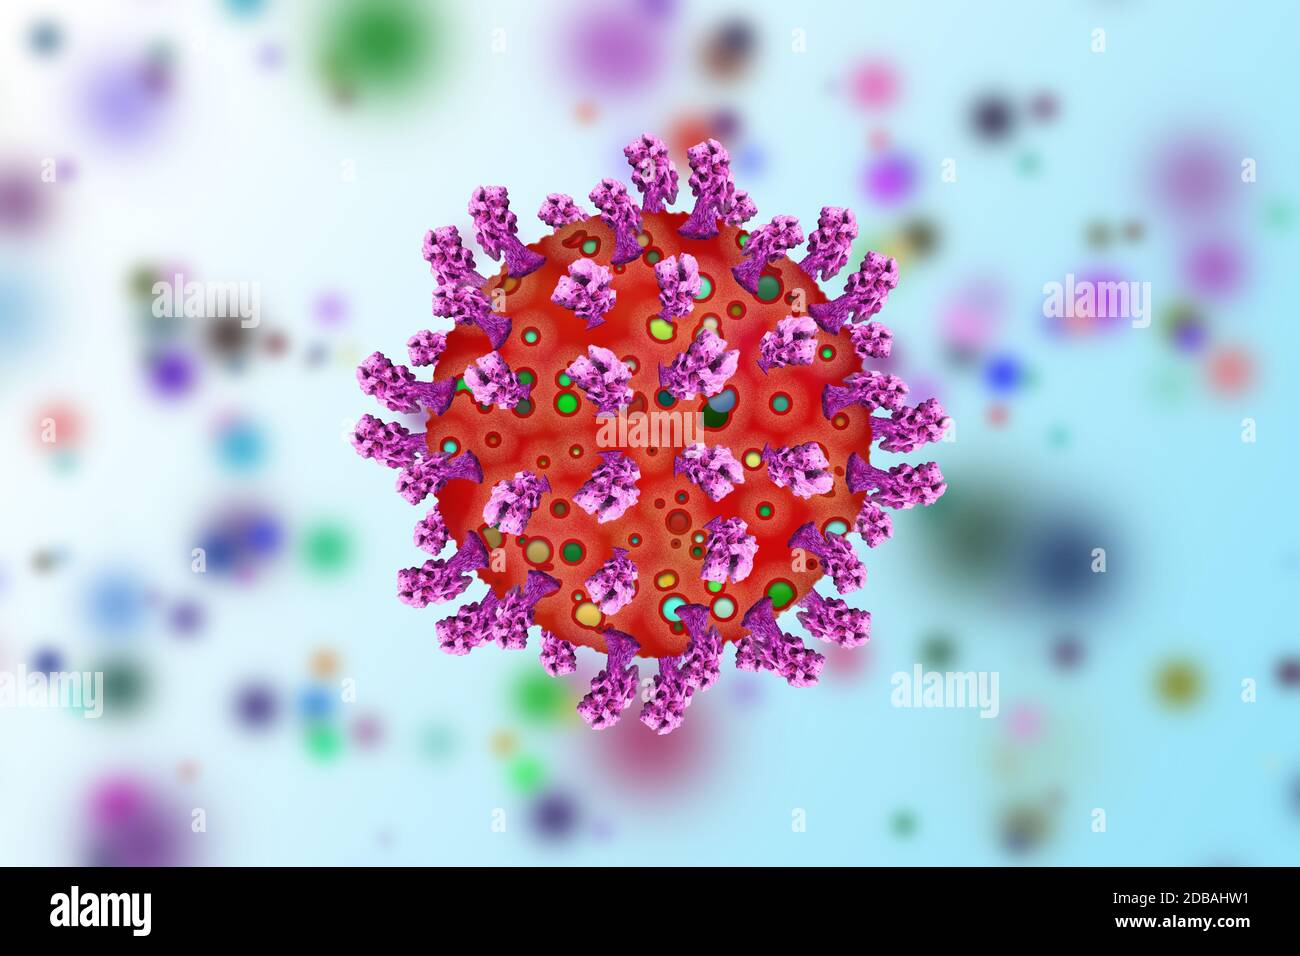 Ansteckender Coronavirus-Ausbruch und Coronaviren Influenza medizinische Krise als gefährliche Grippesteim Fälle oder Pandemie öffentlichen Gesundheitsrisiko Stockfoto